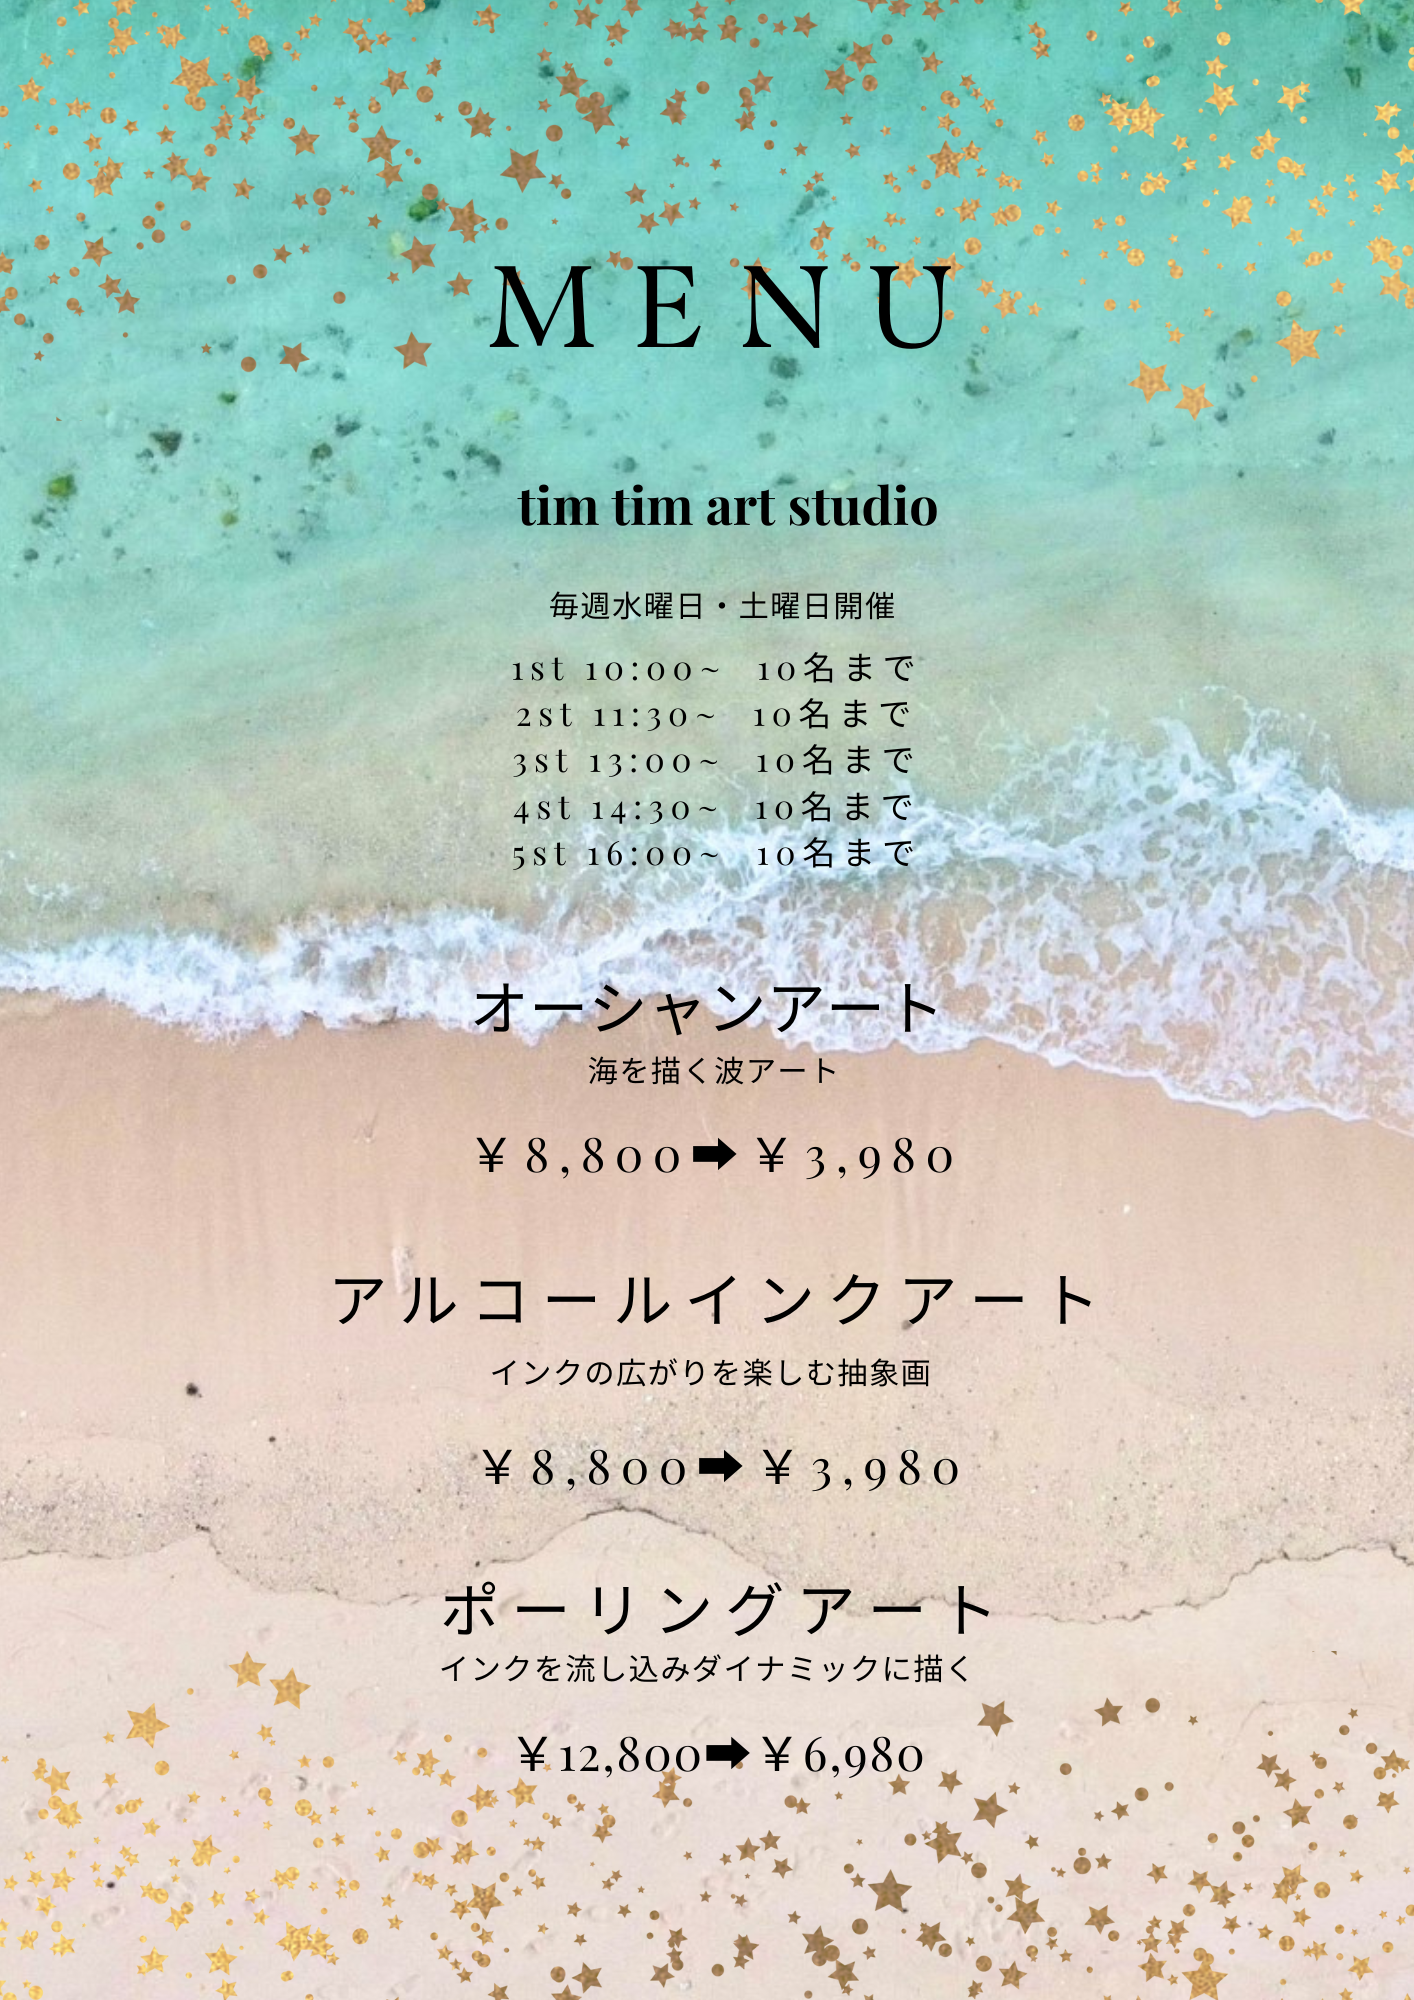 〜沖縄でアート体験〜オーシャンアート・アルコールインクアートのアート体験教室のWS写真1枚目